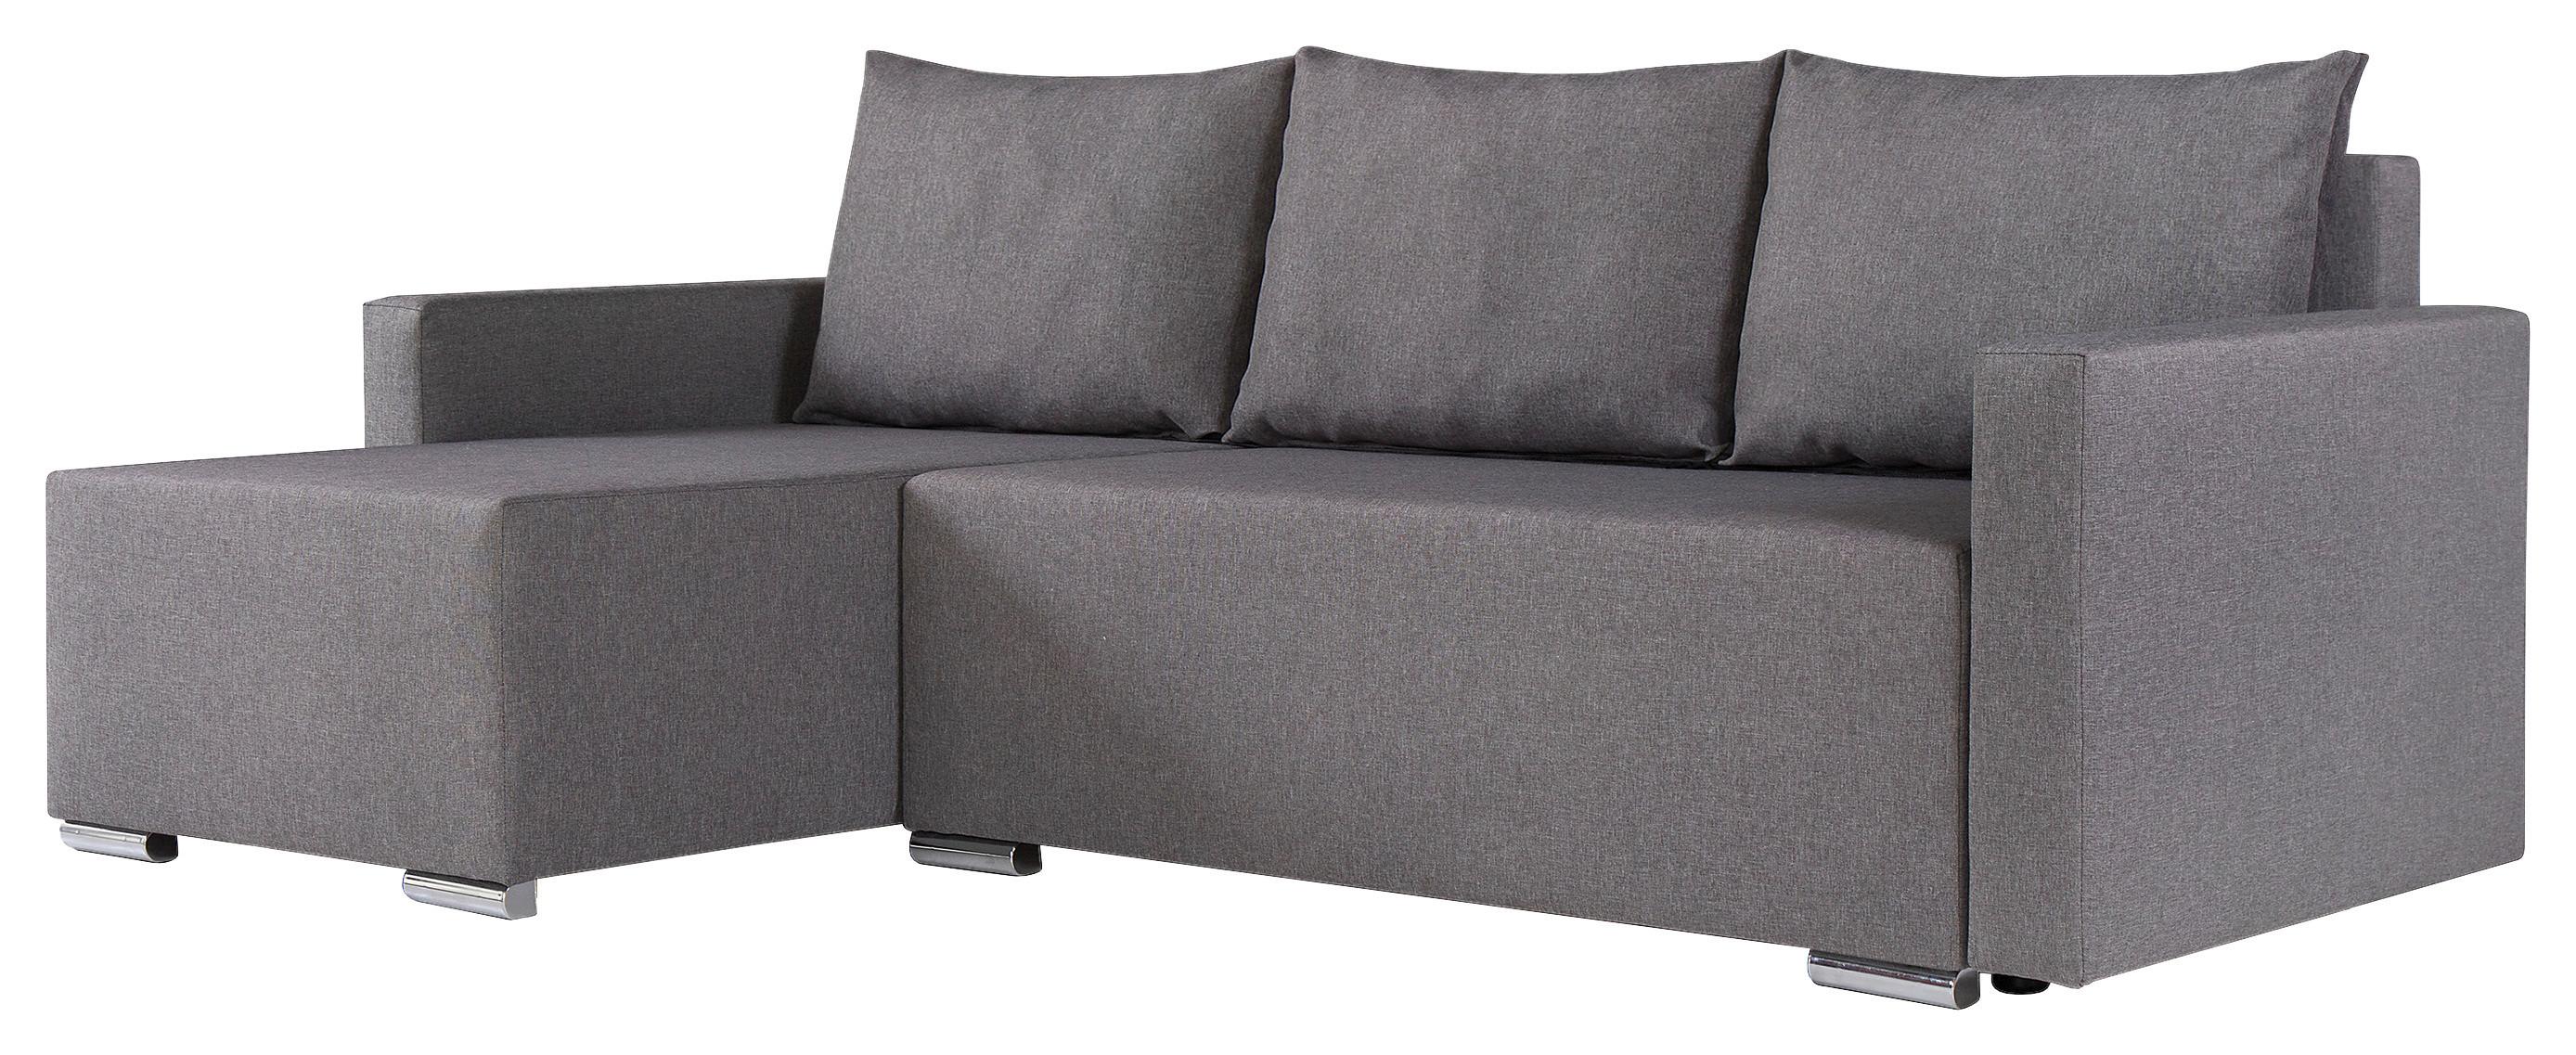 Sedežna Garnitura Lena S, Siva, Z Ležiščem In Predalom - srebrne barve/temno siva, Moderno (212/129cm) - Top ponudba